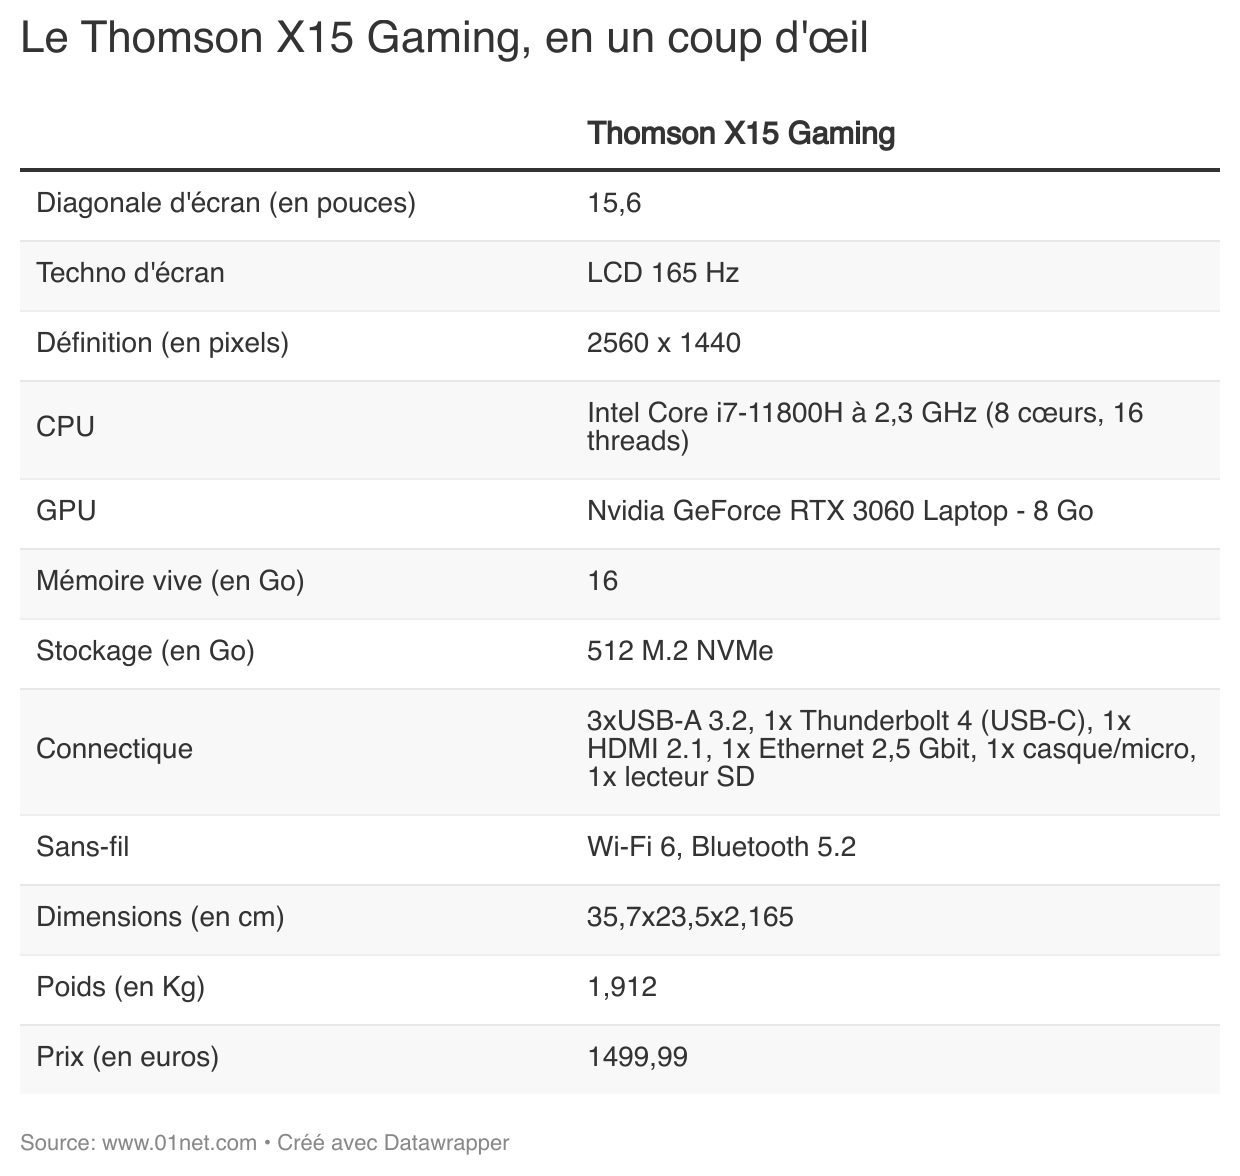 Le Thomson X15 Gaming, en un coup d'oeil.